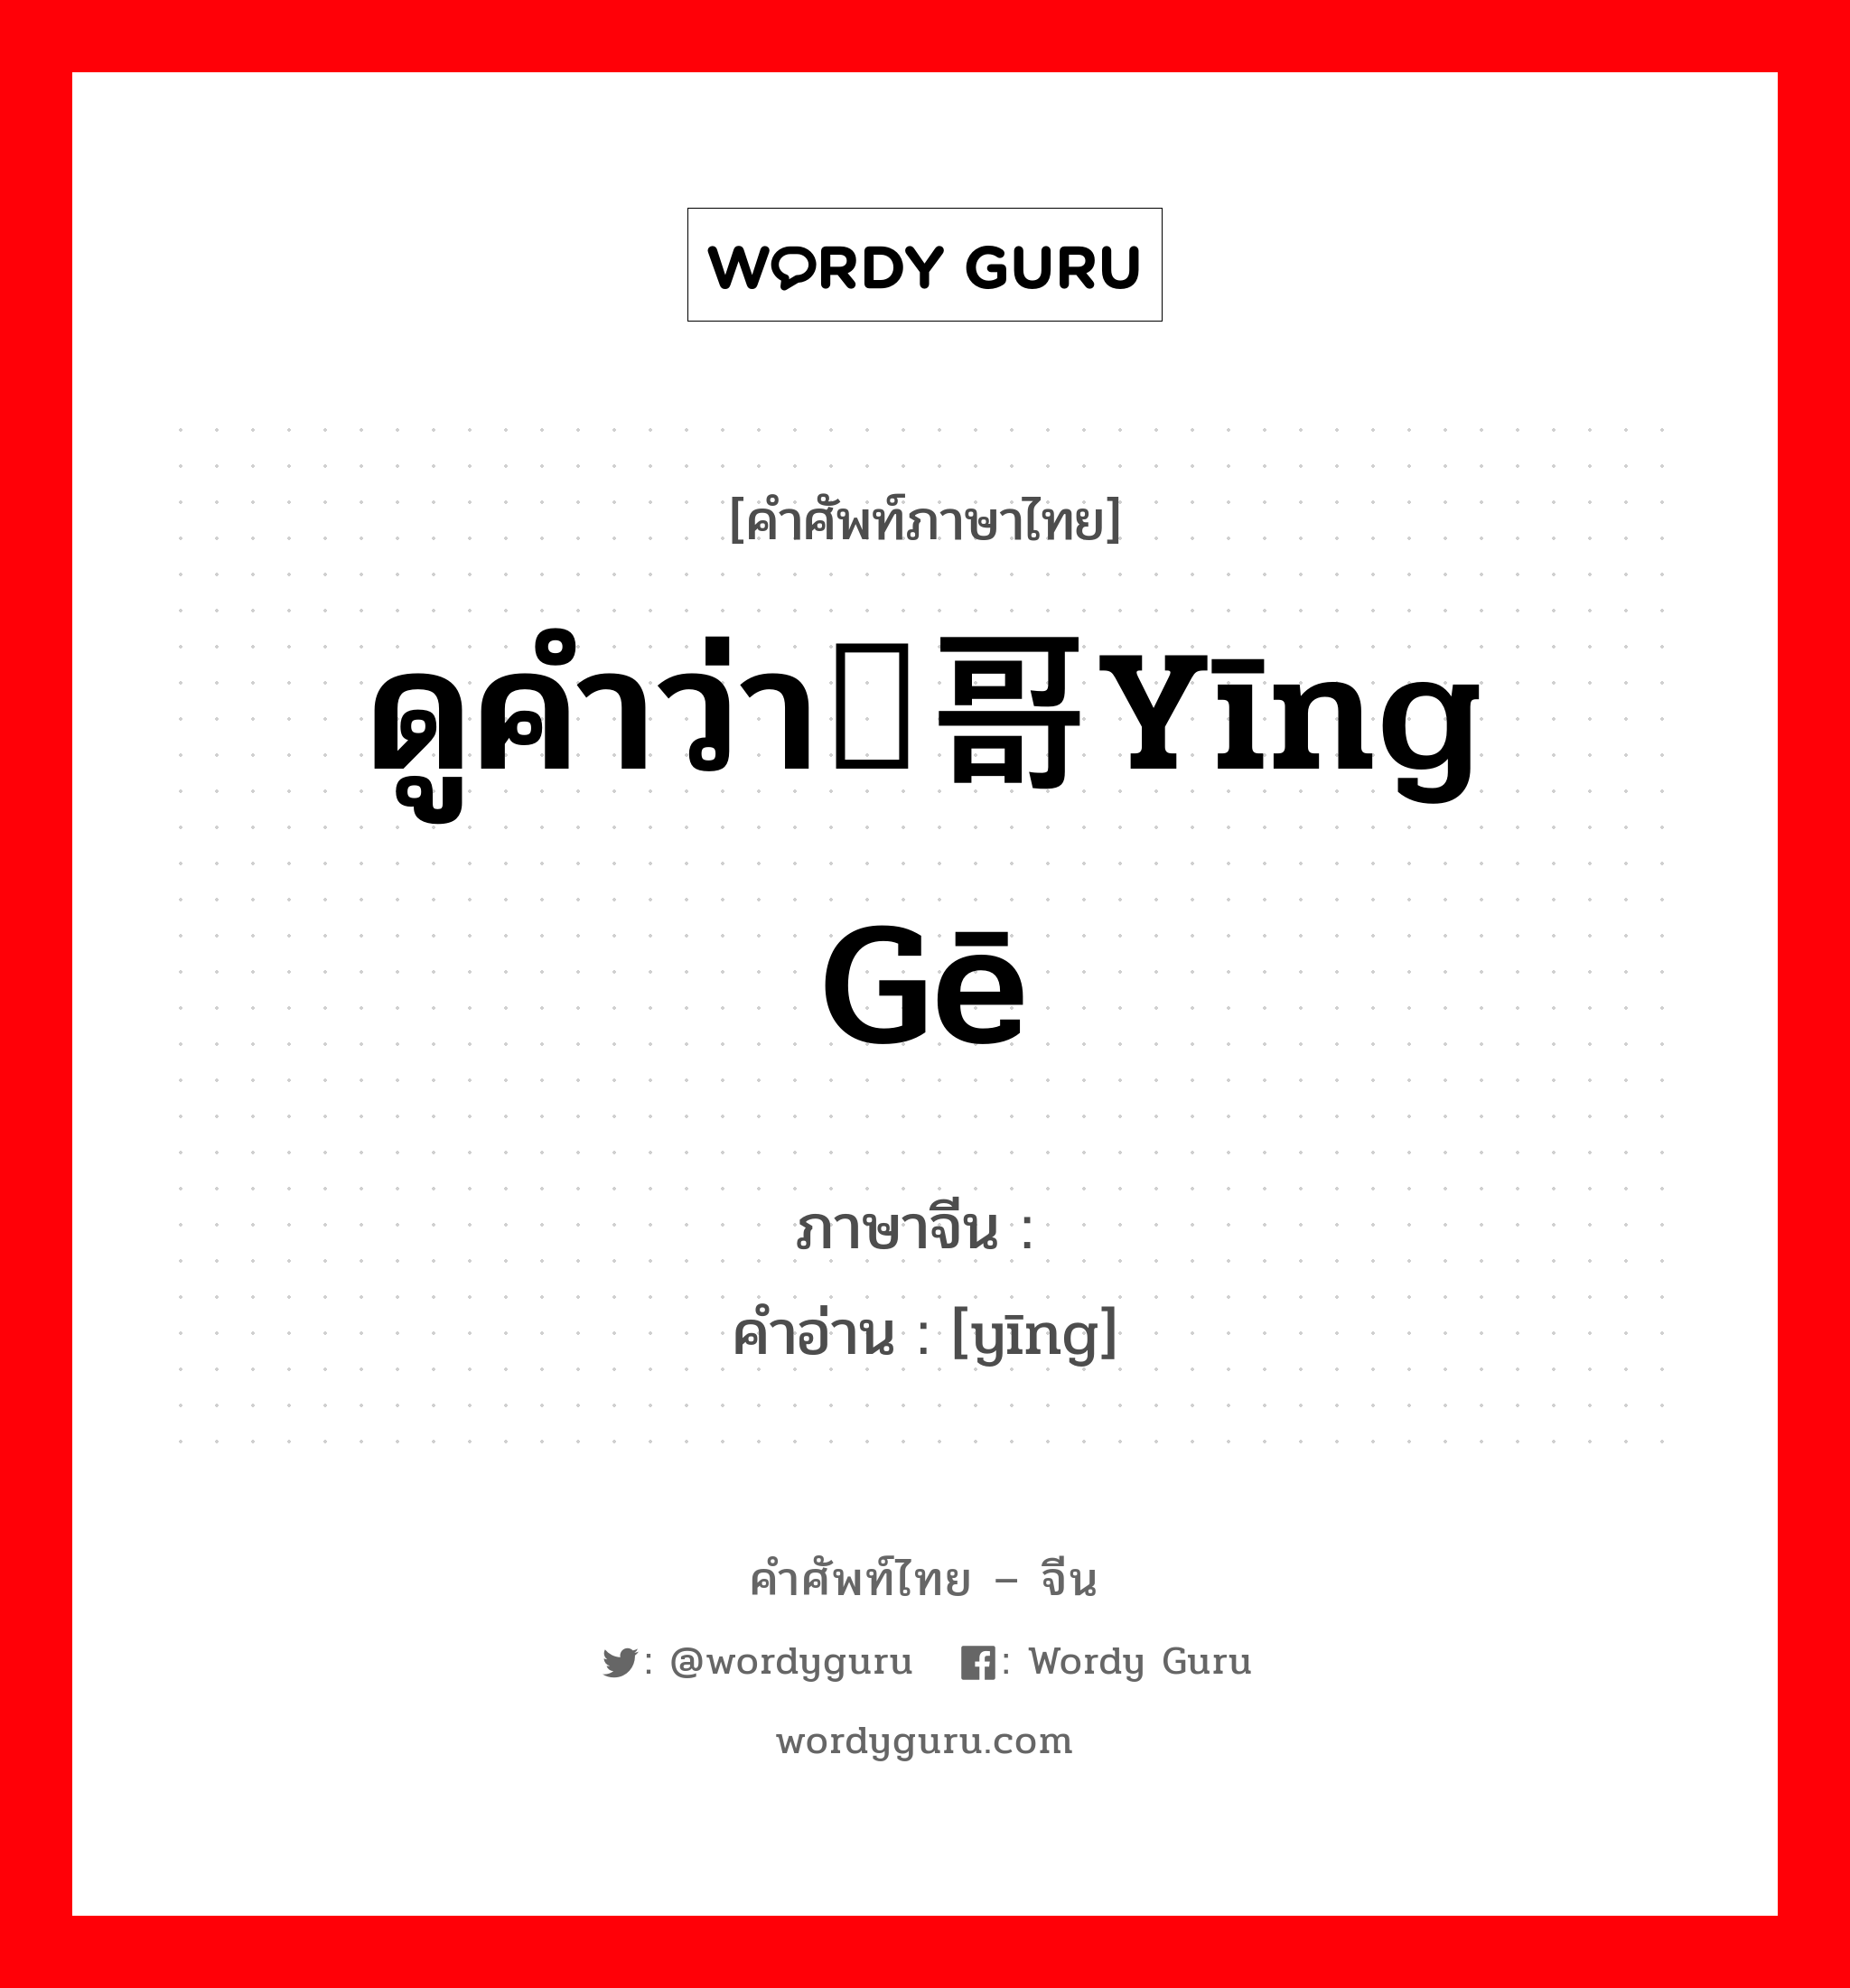 ดูคำว่า鹦哥yīng gē ภาษาจีนคืออะไร, คำศัพท์ภาษาไทย - จีน ดูคำว่า鹦哥yīng gē ภาษาจีน 鹦 คำอ่าน [yīng]